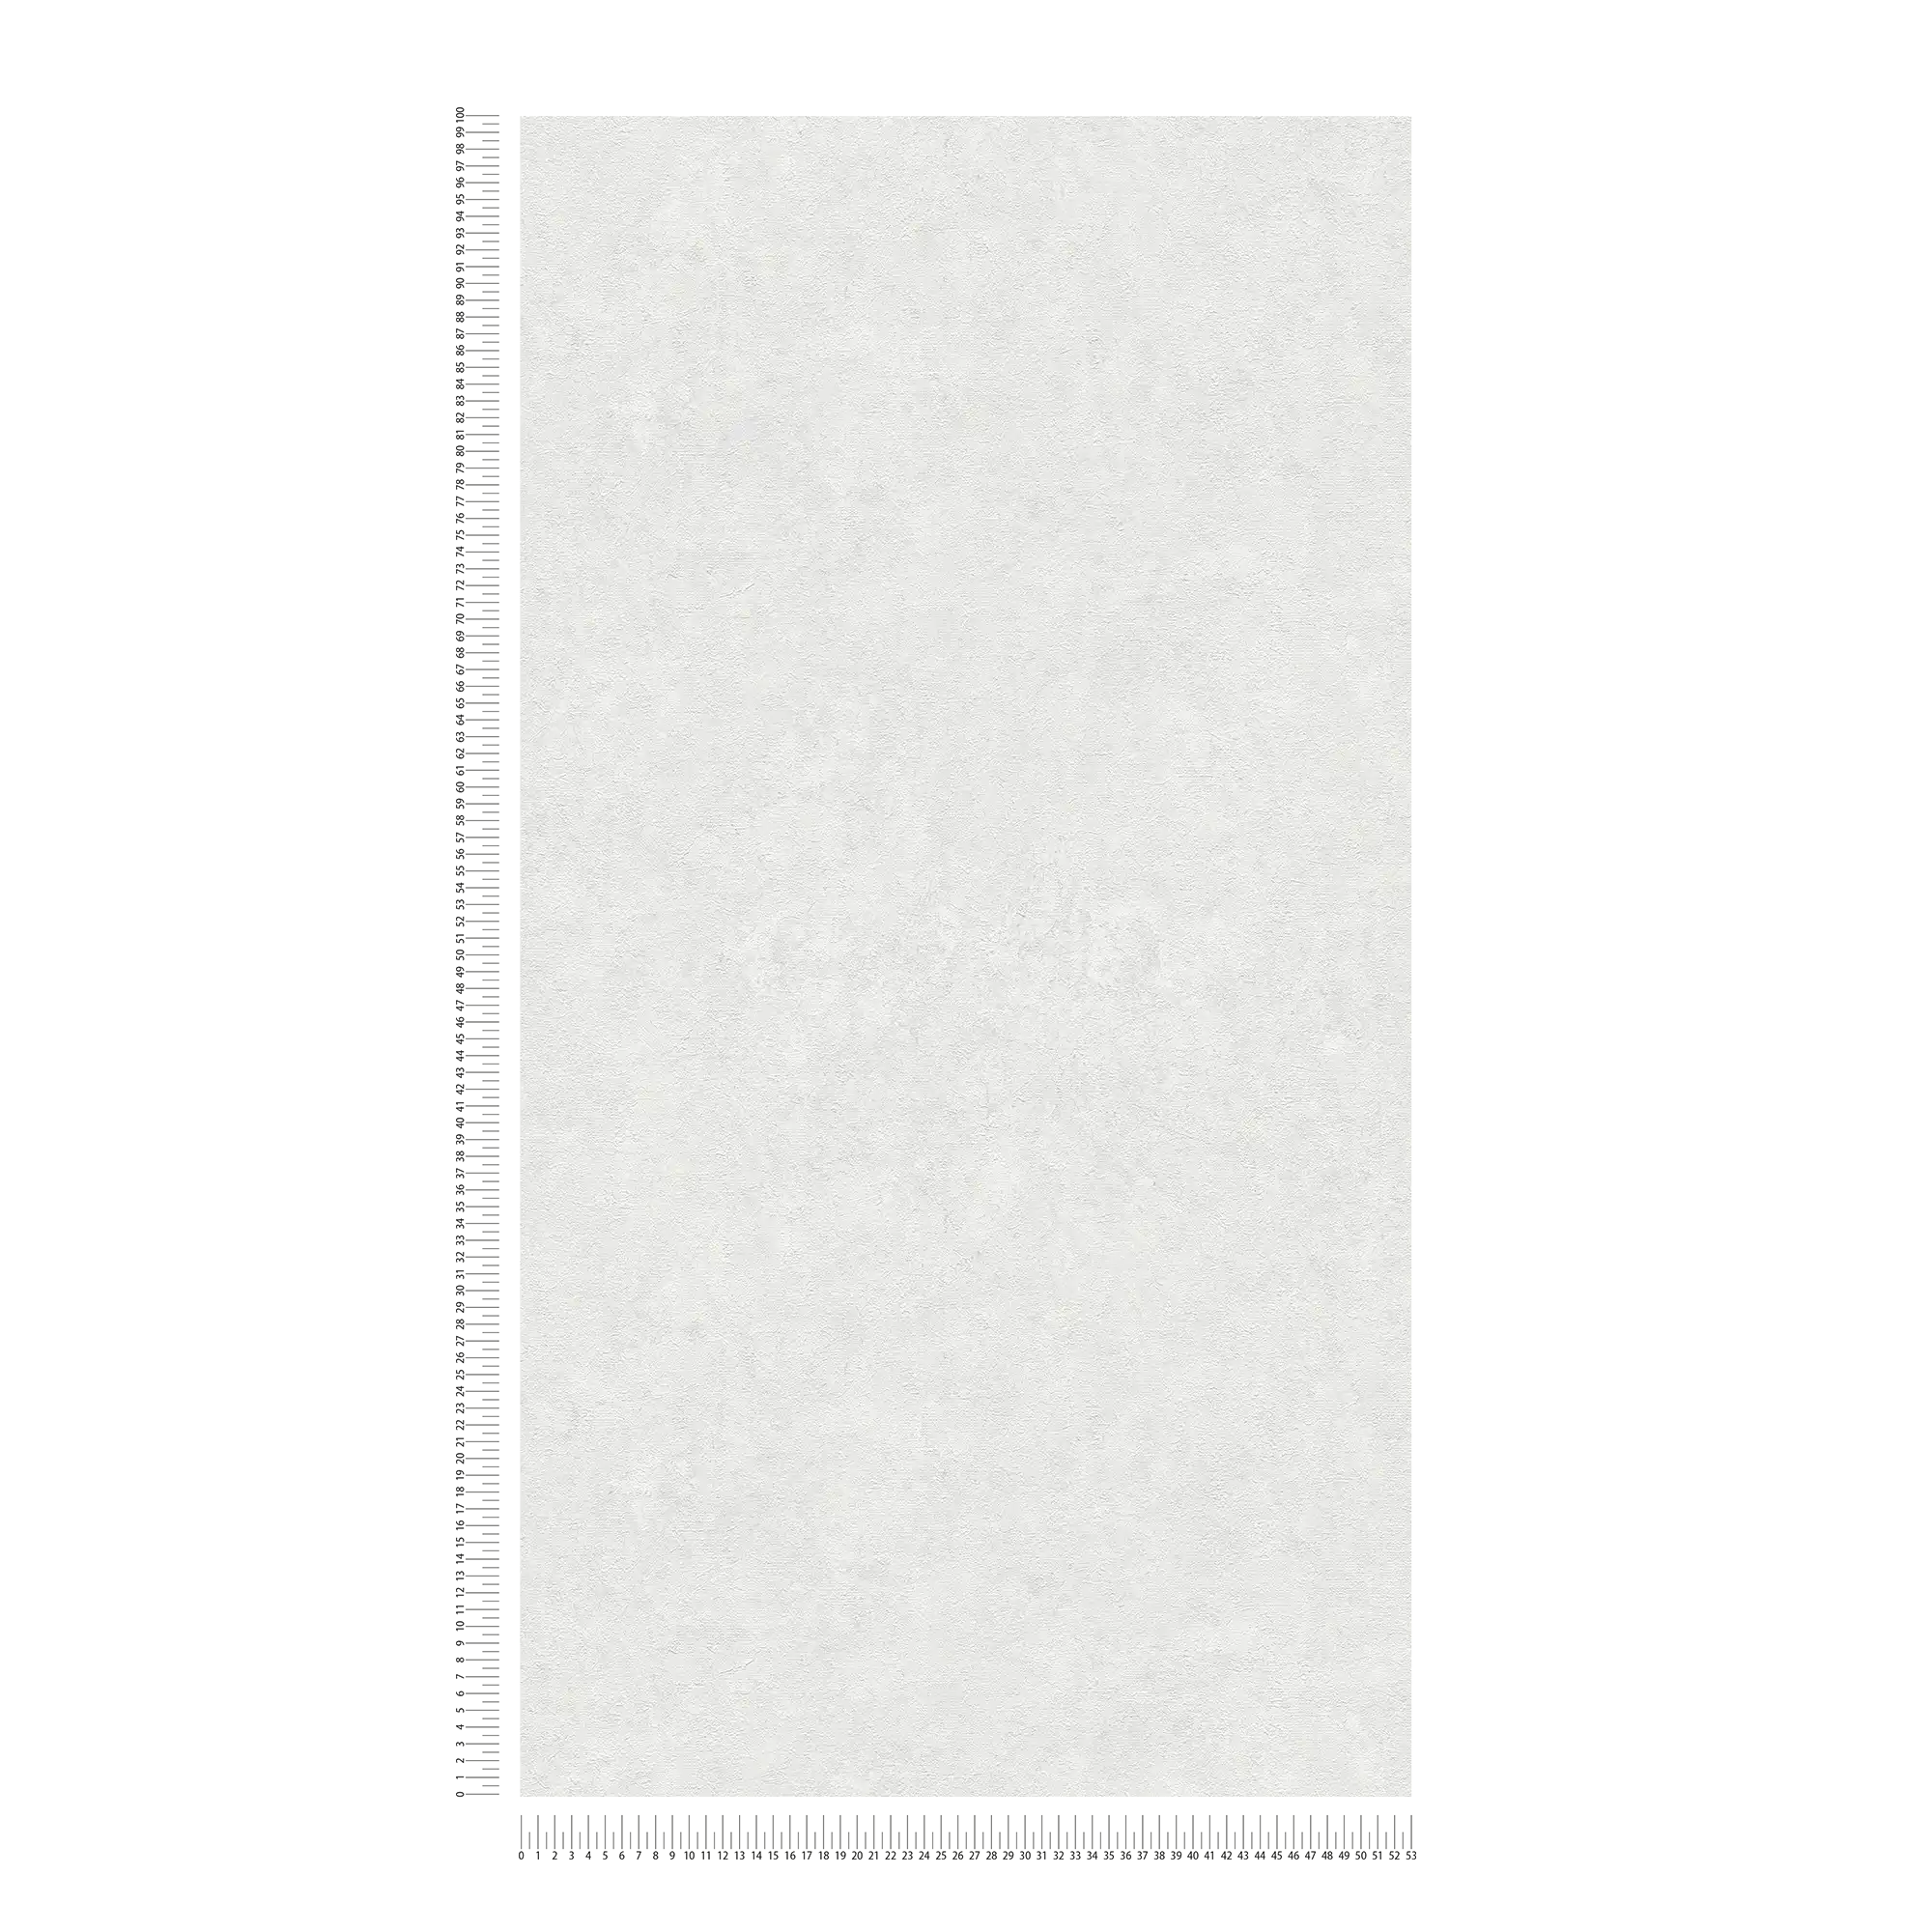             Papel pintado unitario con textura en tonos sutiles - blanco, gris
        